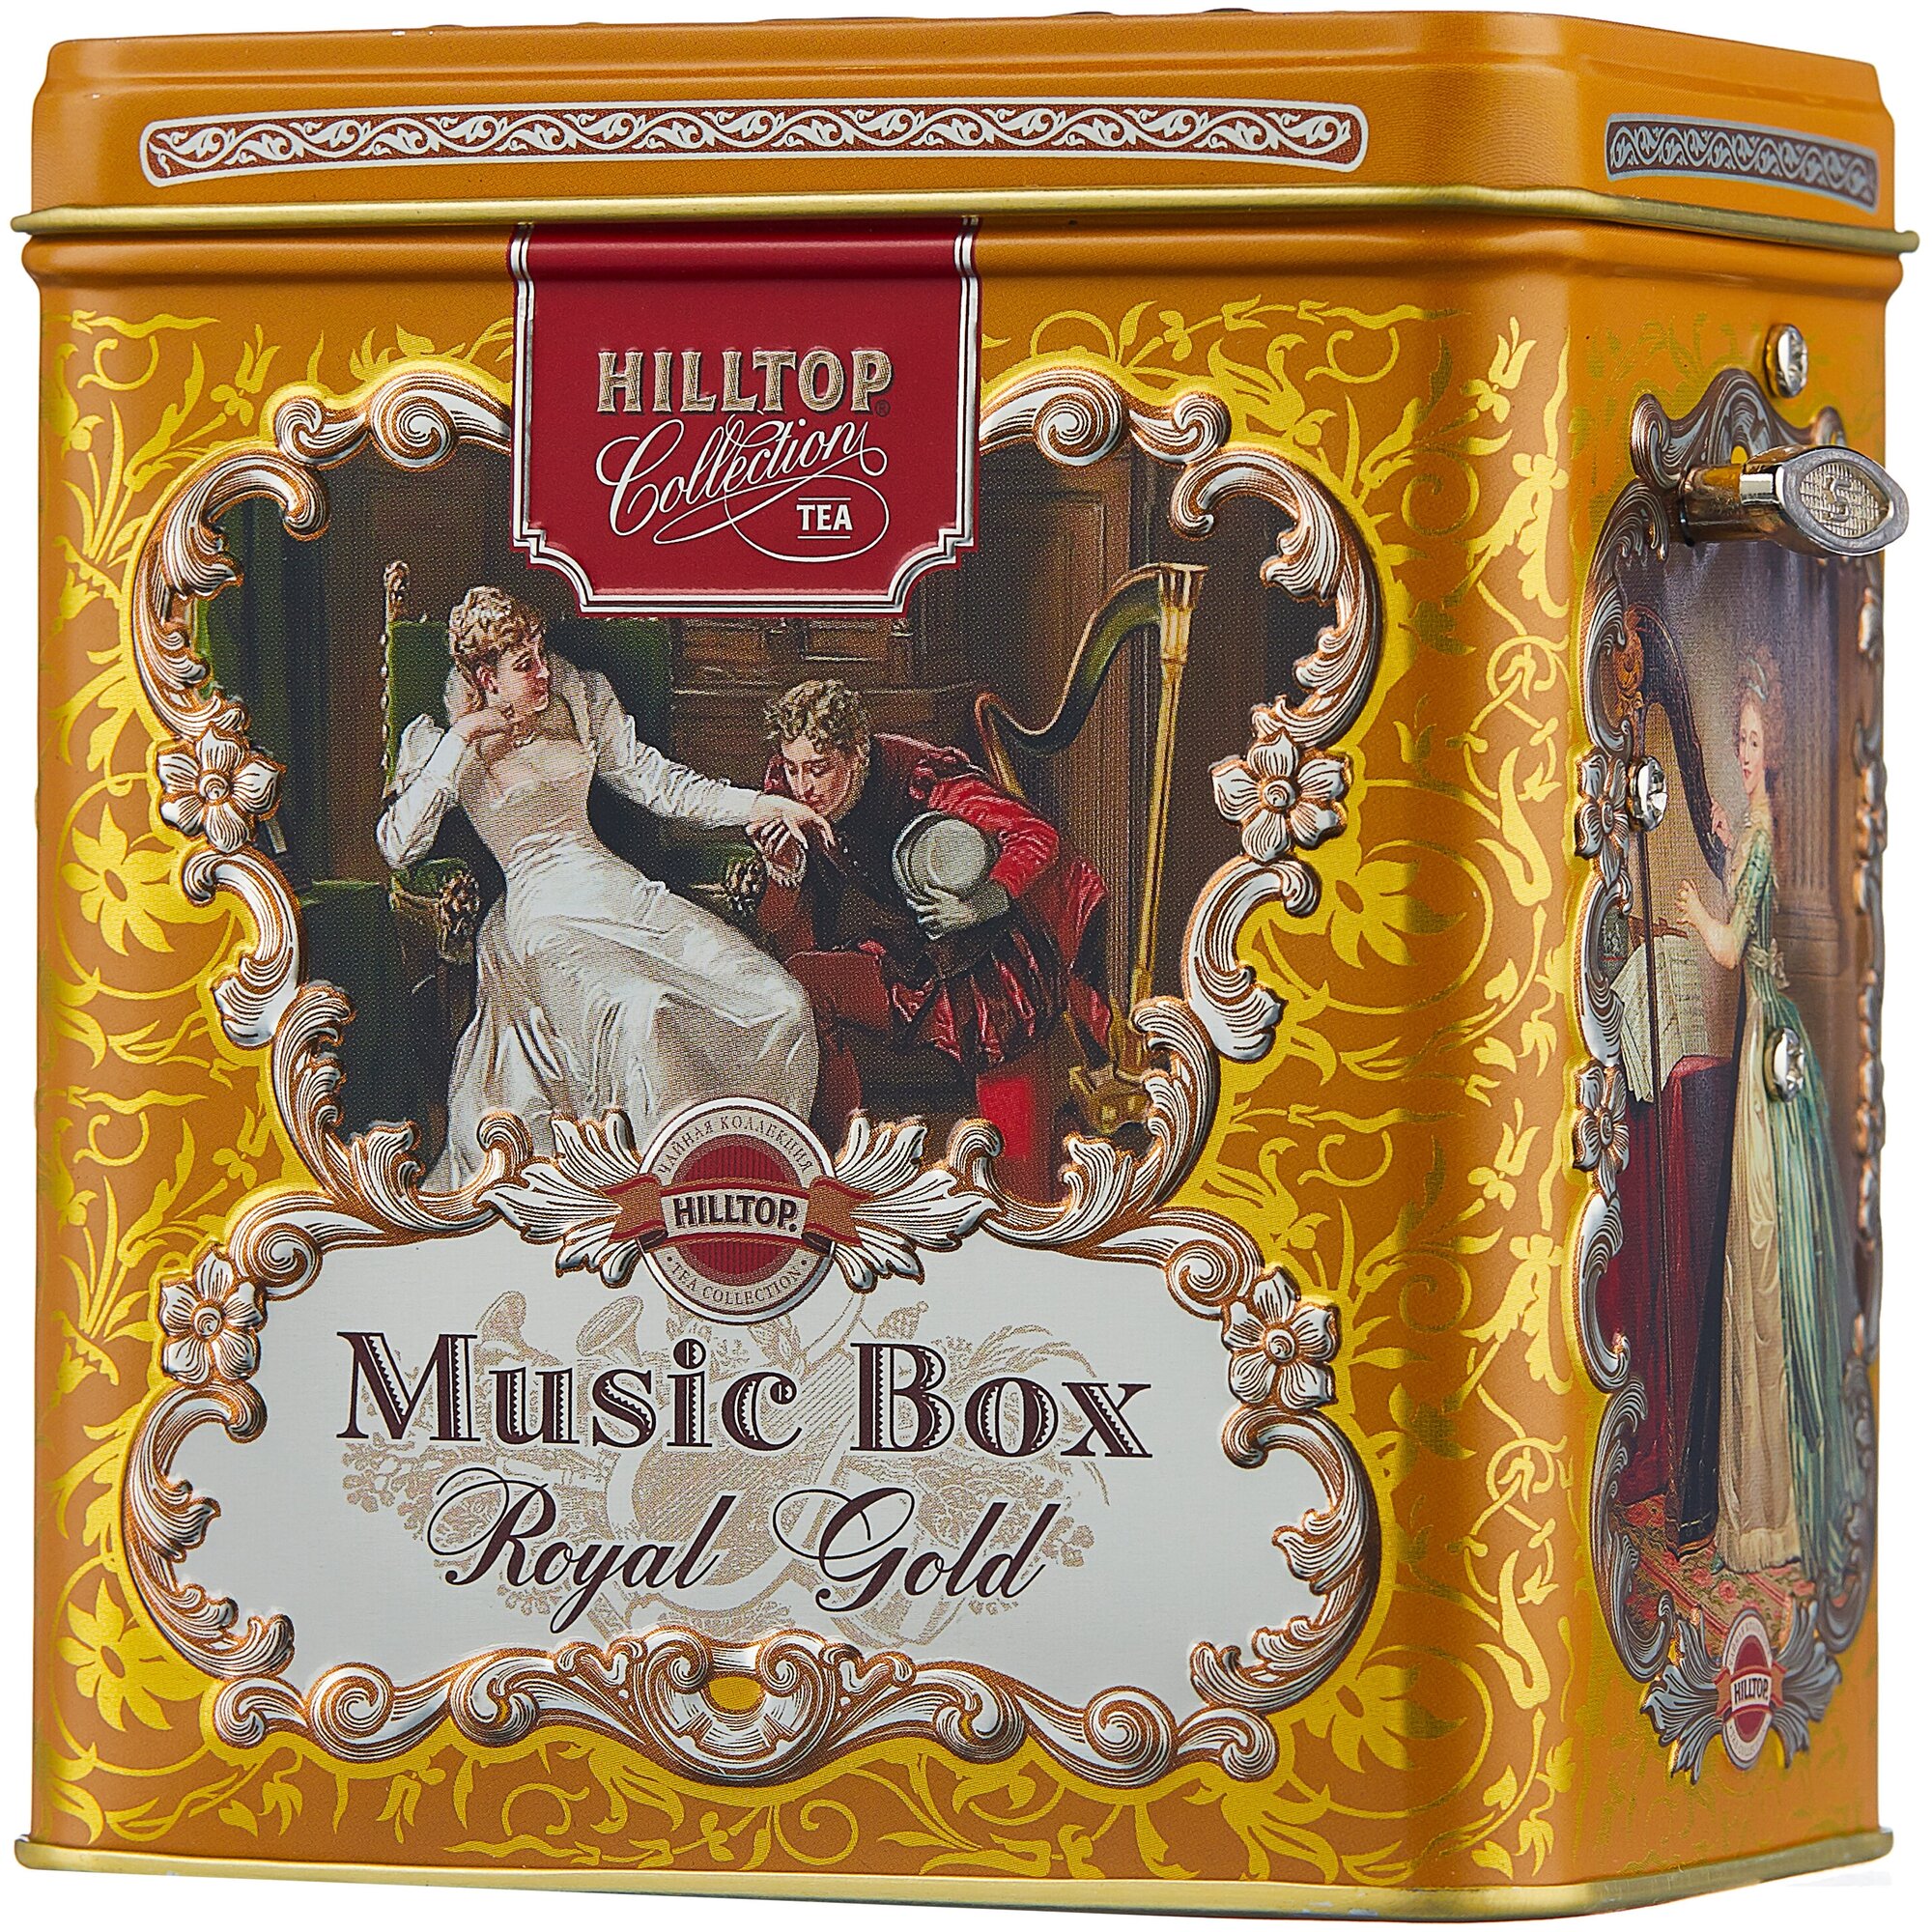 Hilltop музыкальная шкатулка Королевское золото, 100гр - фотография № 1